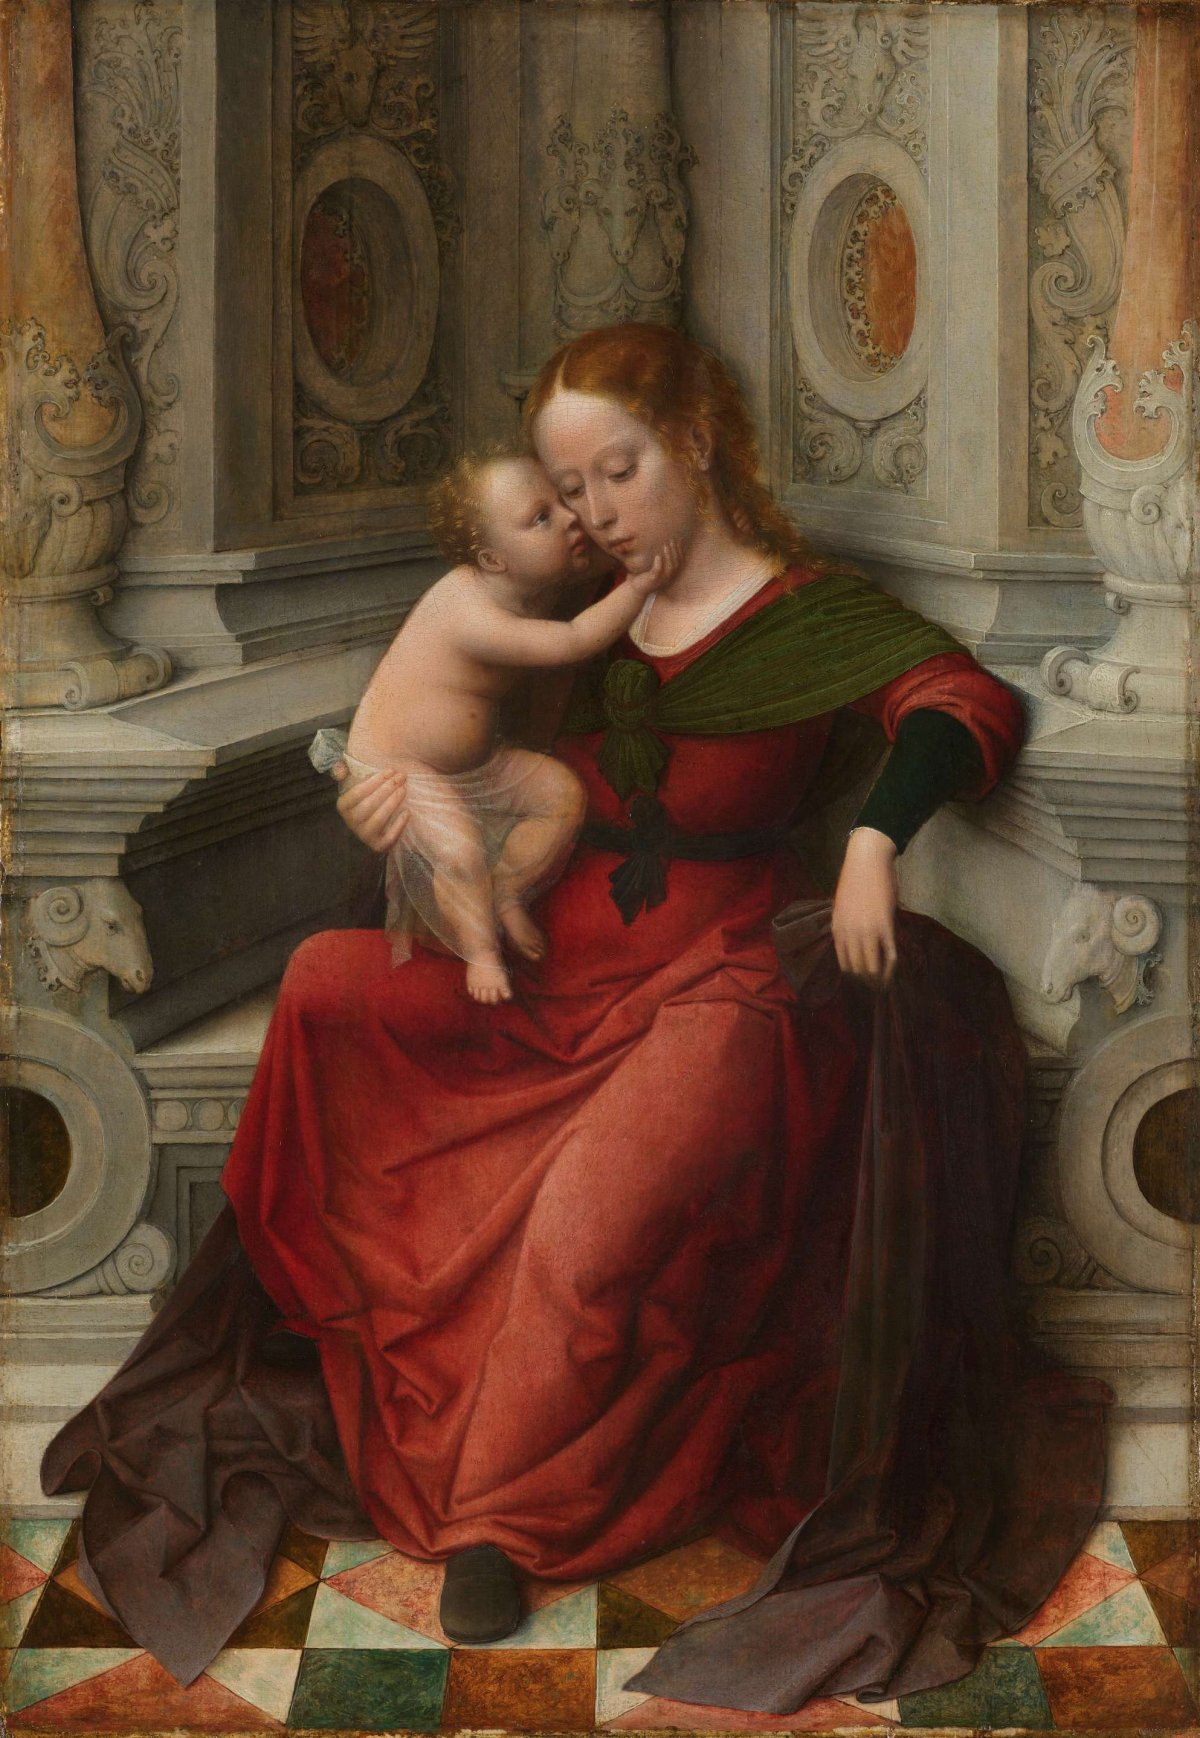 Virgin and Child, Adriaen Isenbrant, c. 1530 - c. 1540